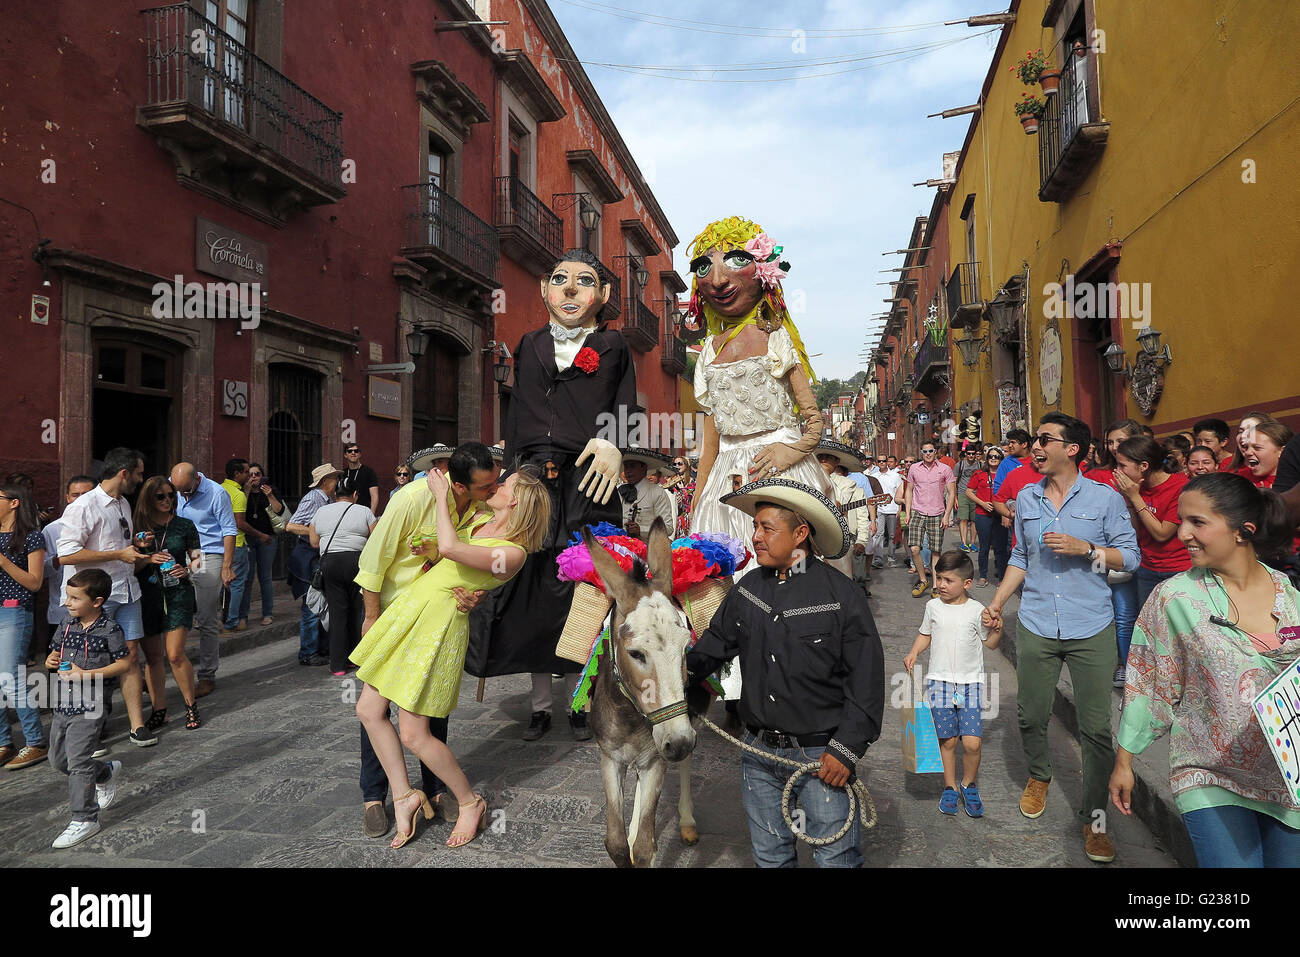 San Miguel De Allende, Mexiko. 18. April 2016. Ein paar Küsse während einer Hochzeit Parade durch die Straßen in San Miguel de Allende. Die Hochzeit-Parade ist komplett mit feierlichen Esel, eine Mariachi-Band und riesige Papier Papiermache Bildnisse (Mojigangas). (Kredit-Bild: © Julie Rogers / via ZUMA Draht) Stockfoto